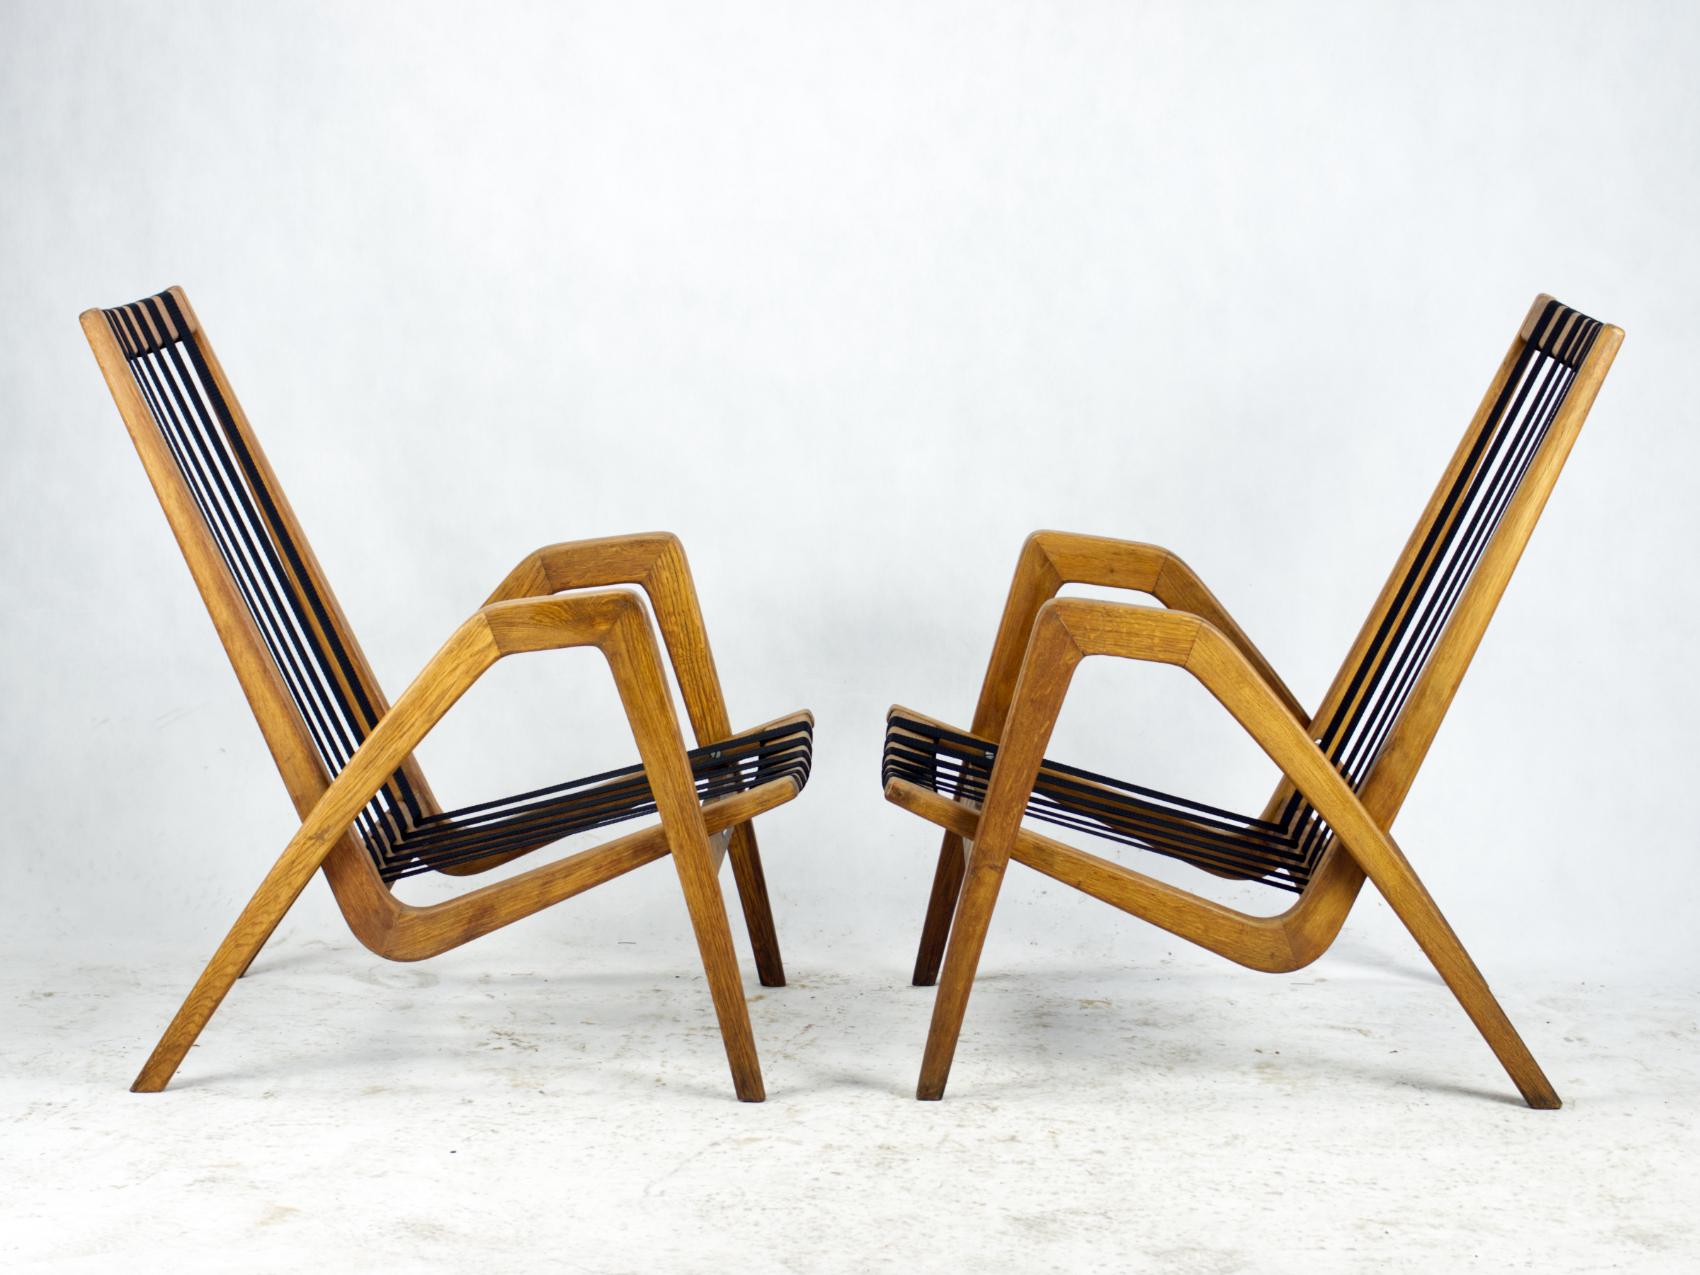 Ces fauteuils ont été conçus dans les années 1950 par l'architecte tchèque Ján Vanek pour l'ULUV (siège de l'art populaire) en Tchécoslovaquie. Les fauteuils faisaient partie de l'inventaire de la cinématographie d'État tchécoslovaque (studios de